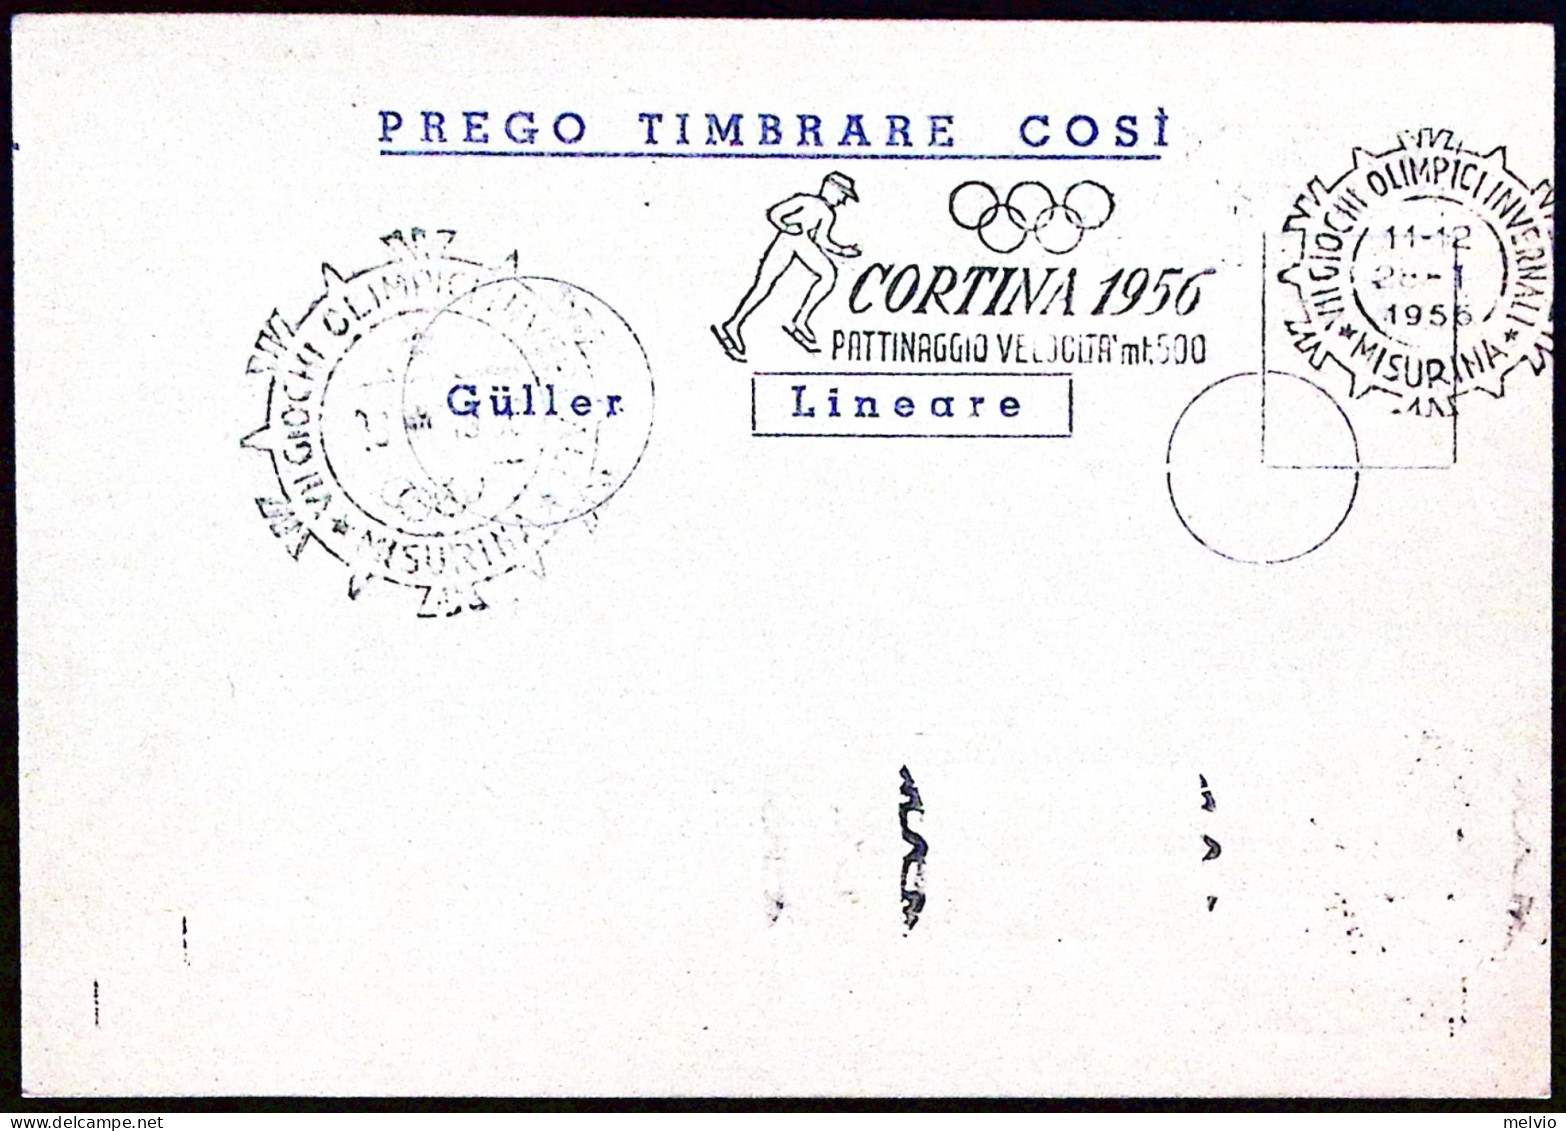 1956-MISURINA PATTINAGGIO VELOCITA' Mt 500 Annullo Targhetta (28.1) Su Cartolina - Demonstrations